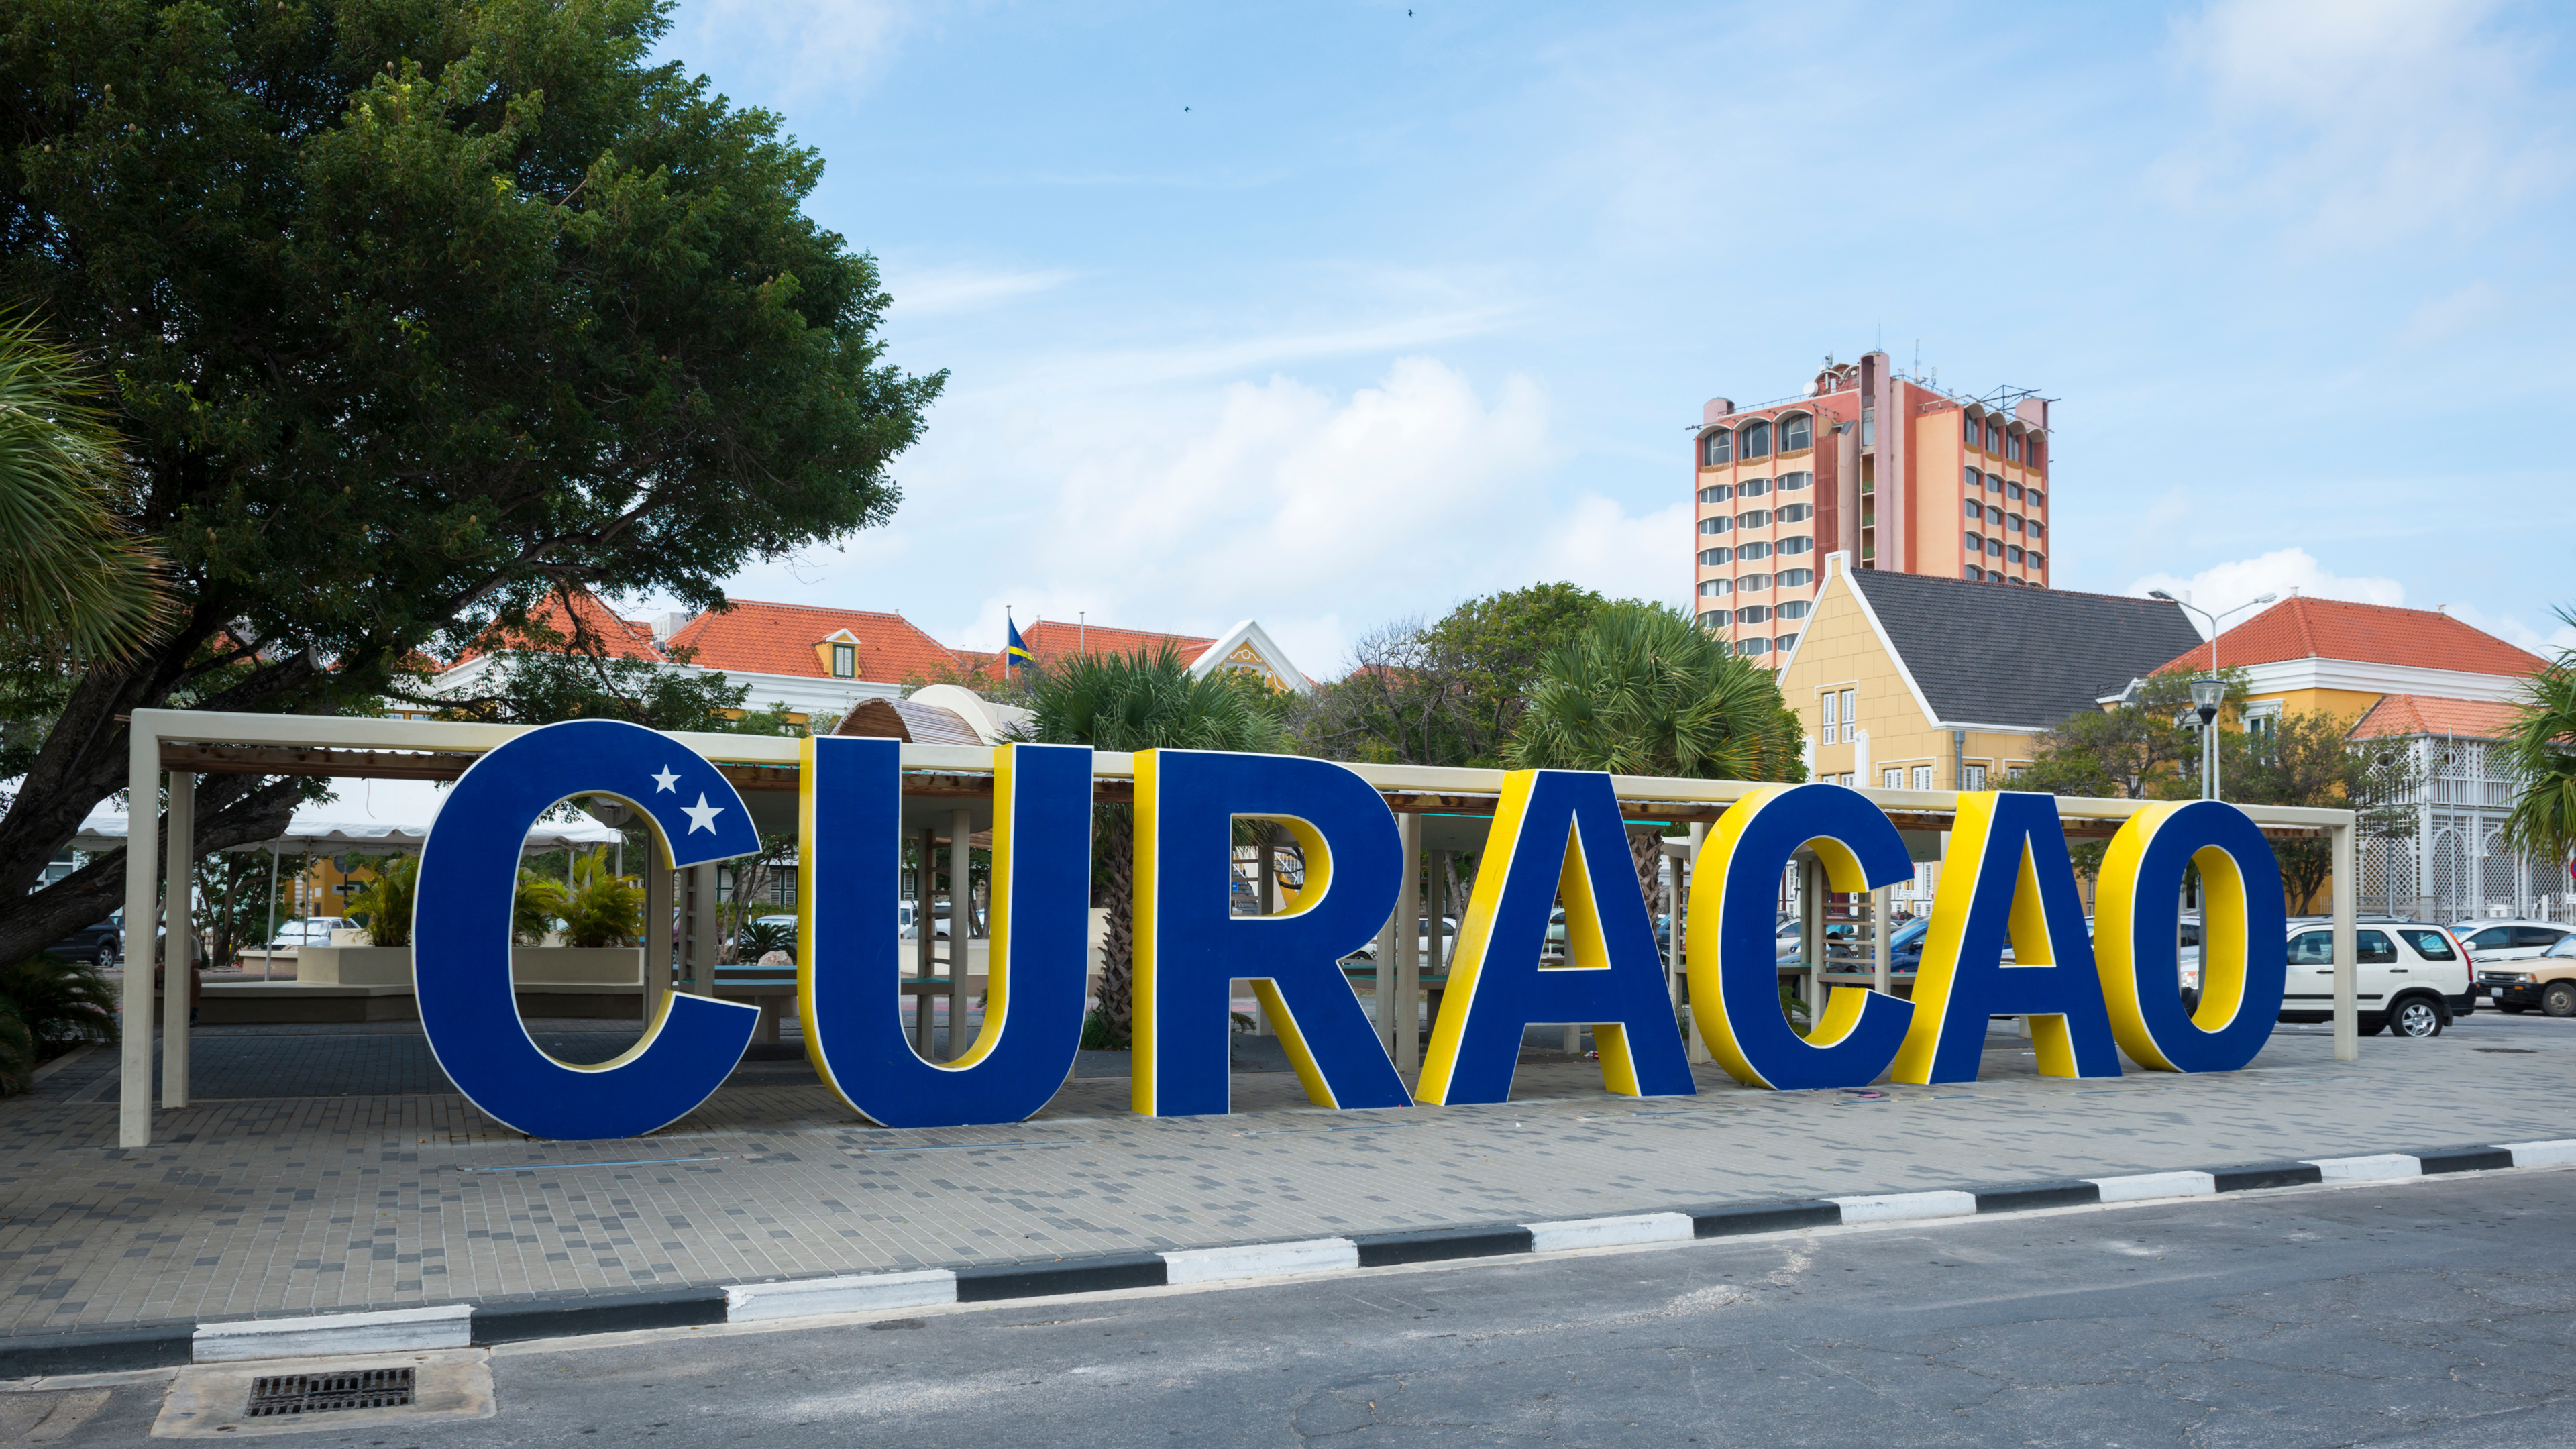 Curacao är en stat som har ett regelverk som spelbolag tidigare uttnytjat för att kunna erbjuda sin tjänst i sverige.